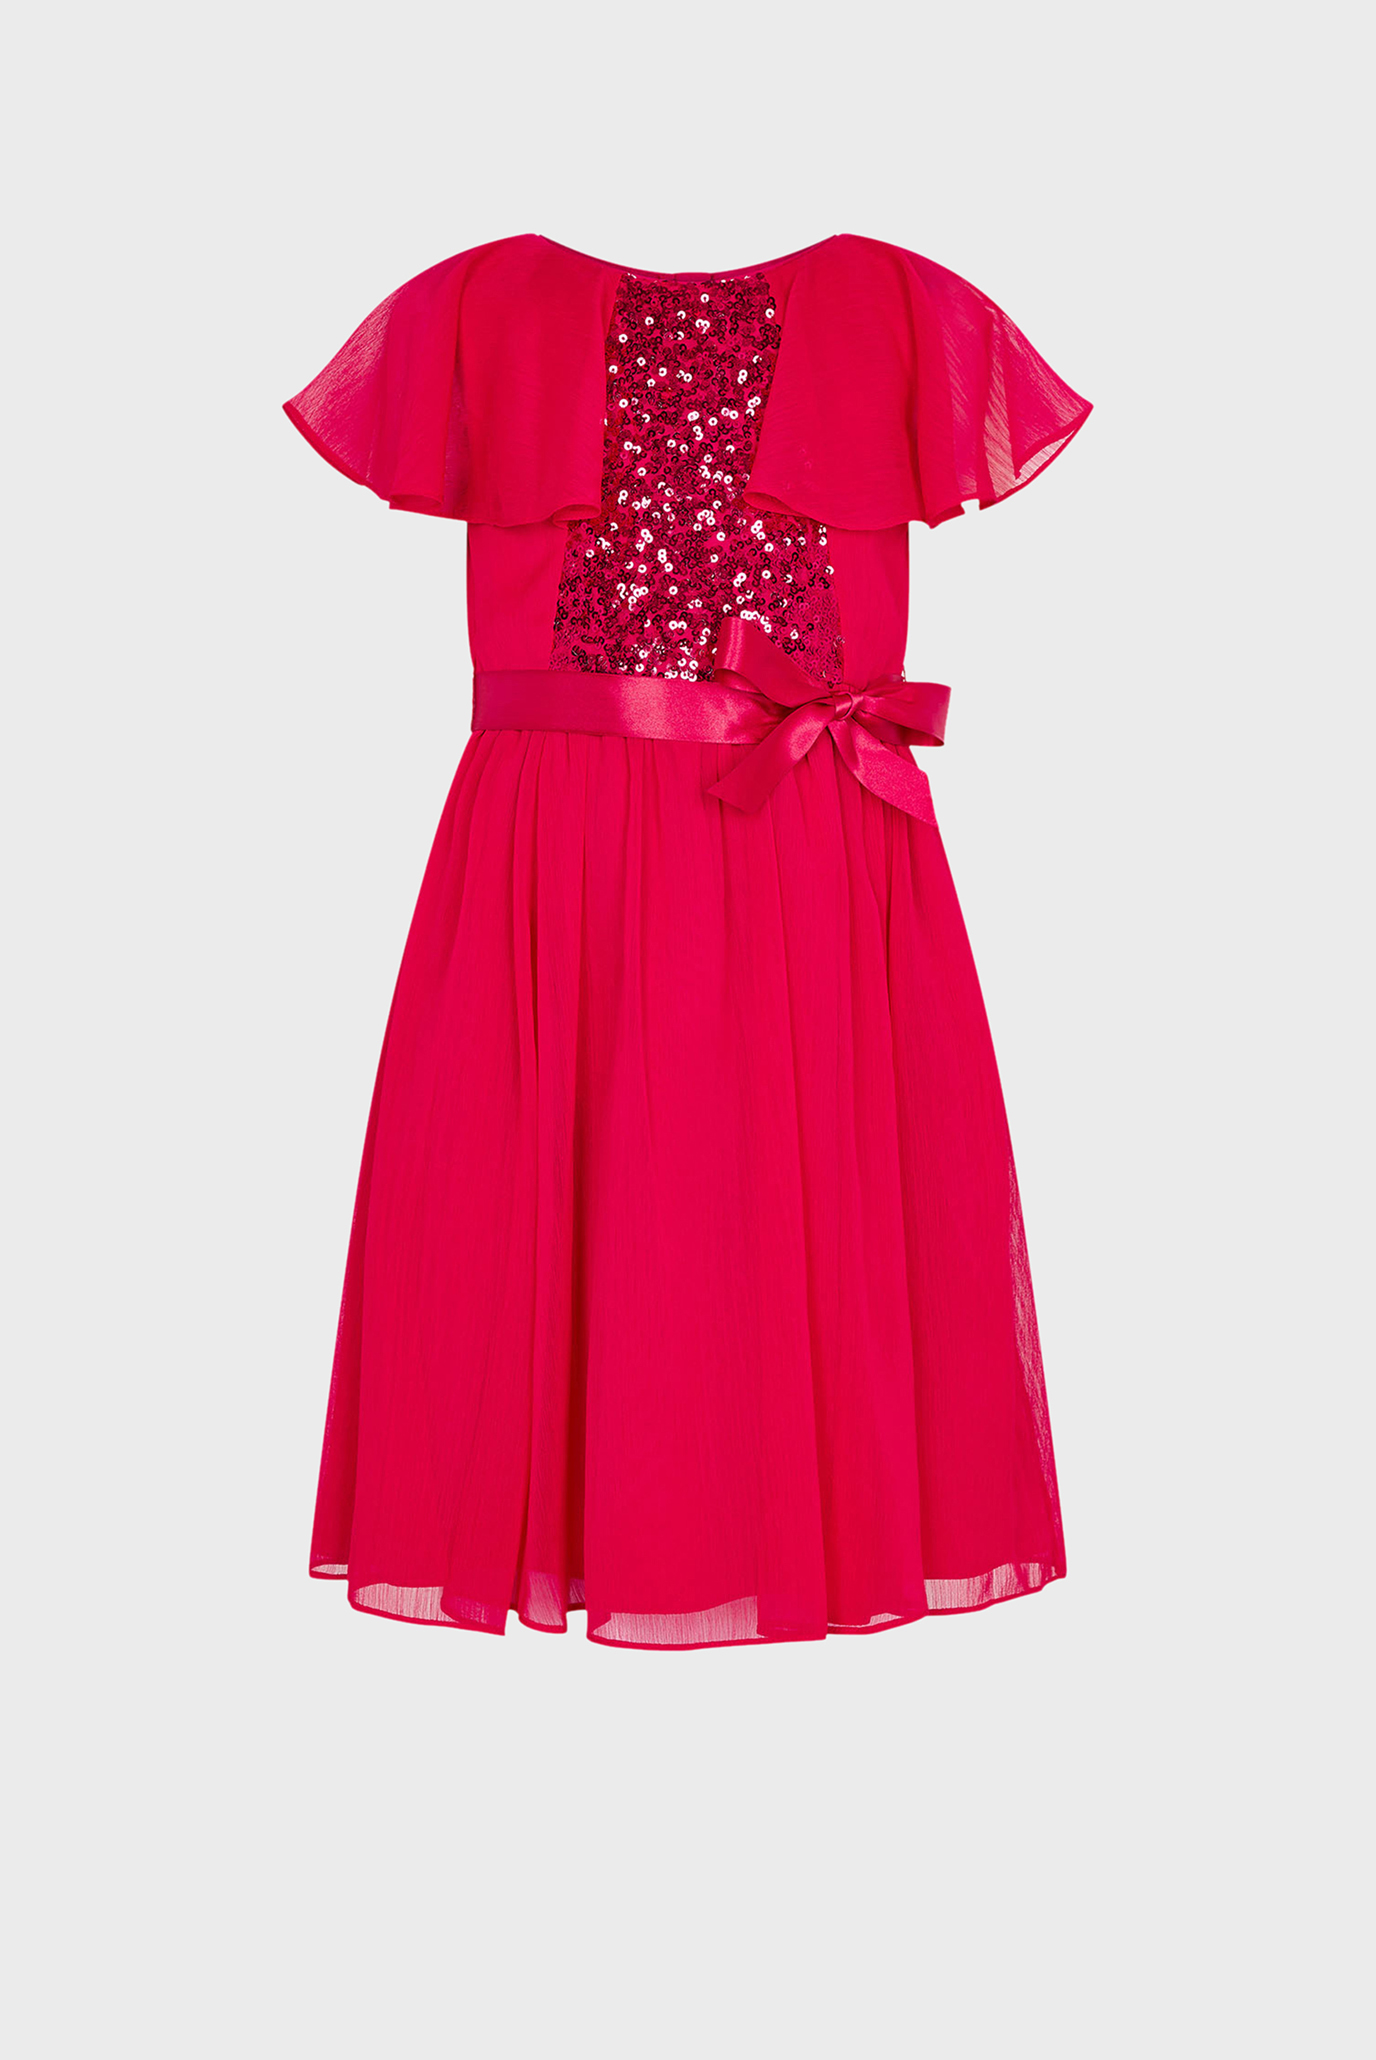 Детское красное платье RED SEQUIN CAPE SLEE 1